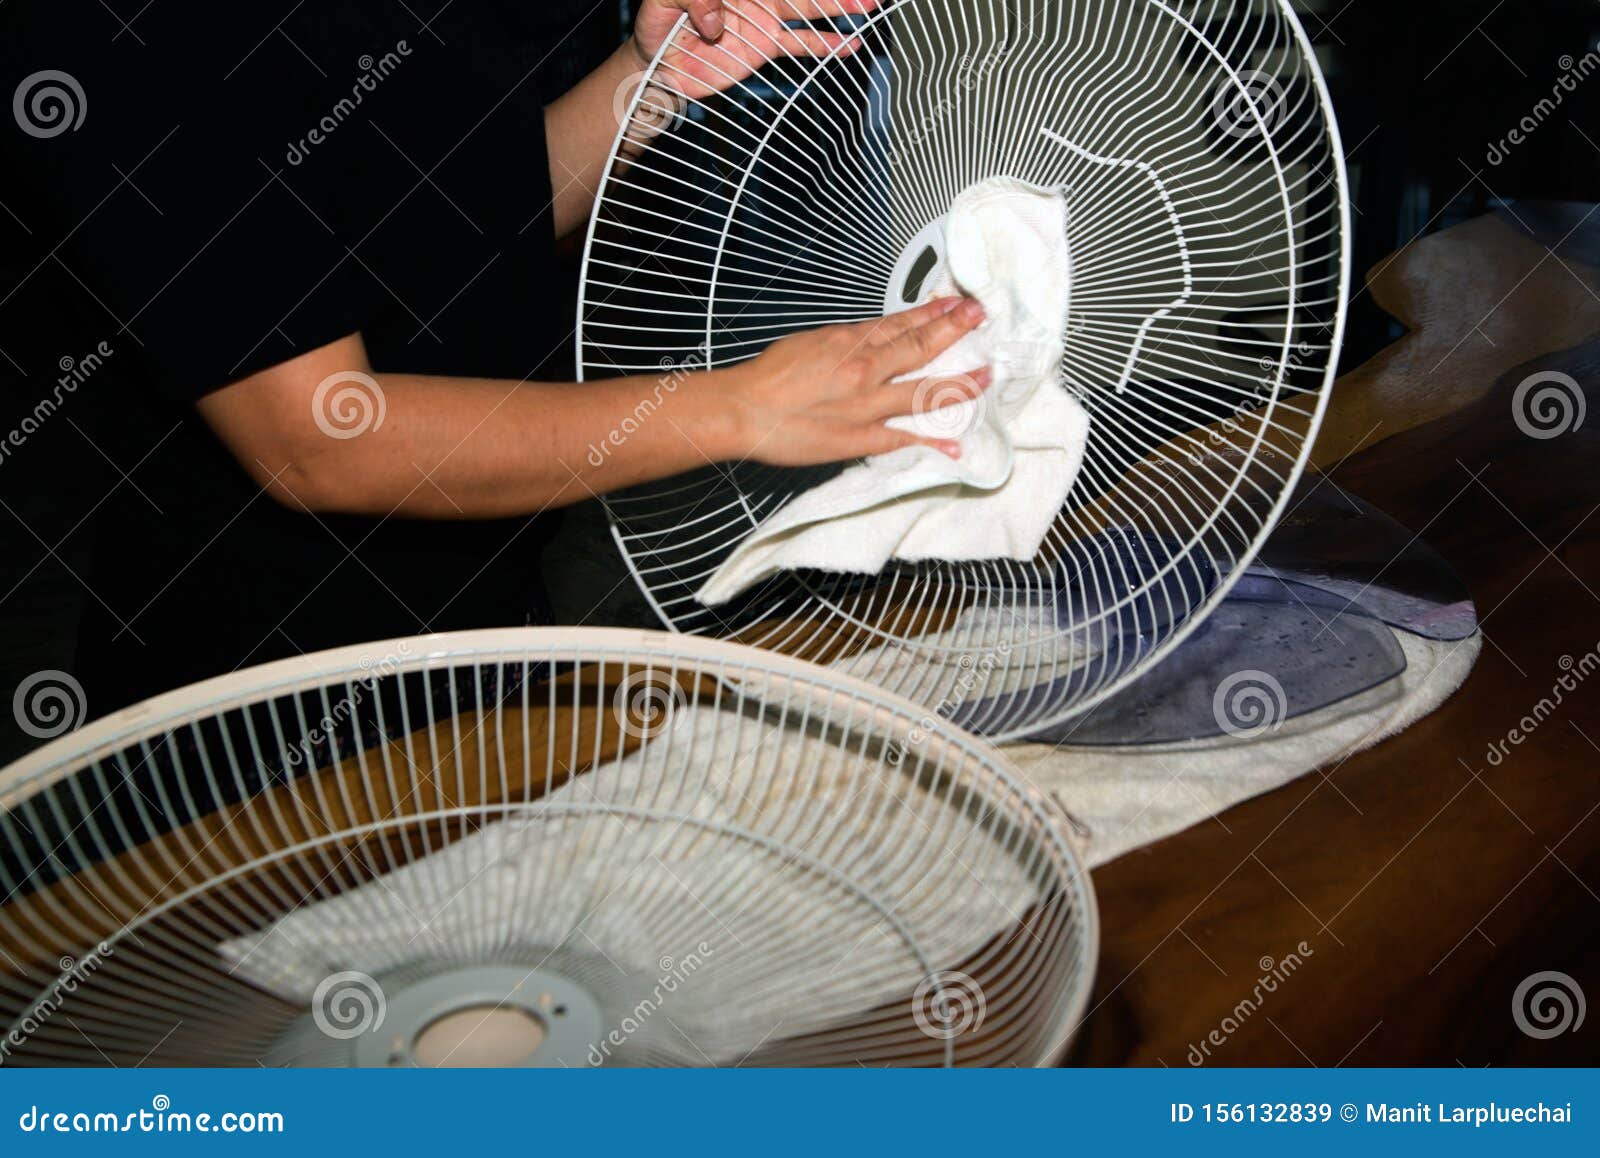 Die WÃ¤rter Verwenden WeiÃŸe Tuch Wanne Und Reinigen Den Elektrischen  Ventilator Stockbild - Bild von kühler, hausarbeit: 156132839